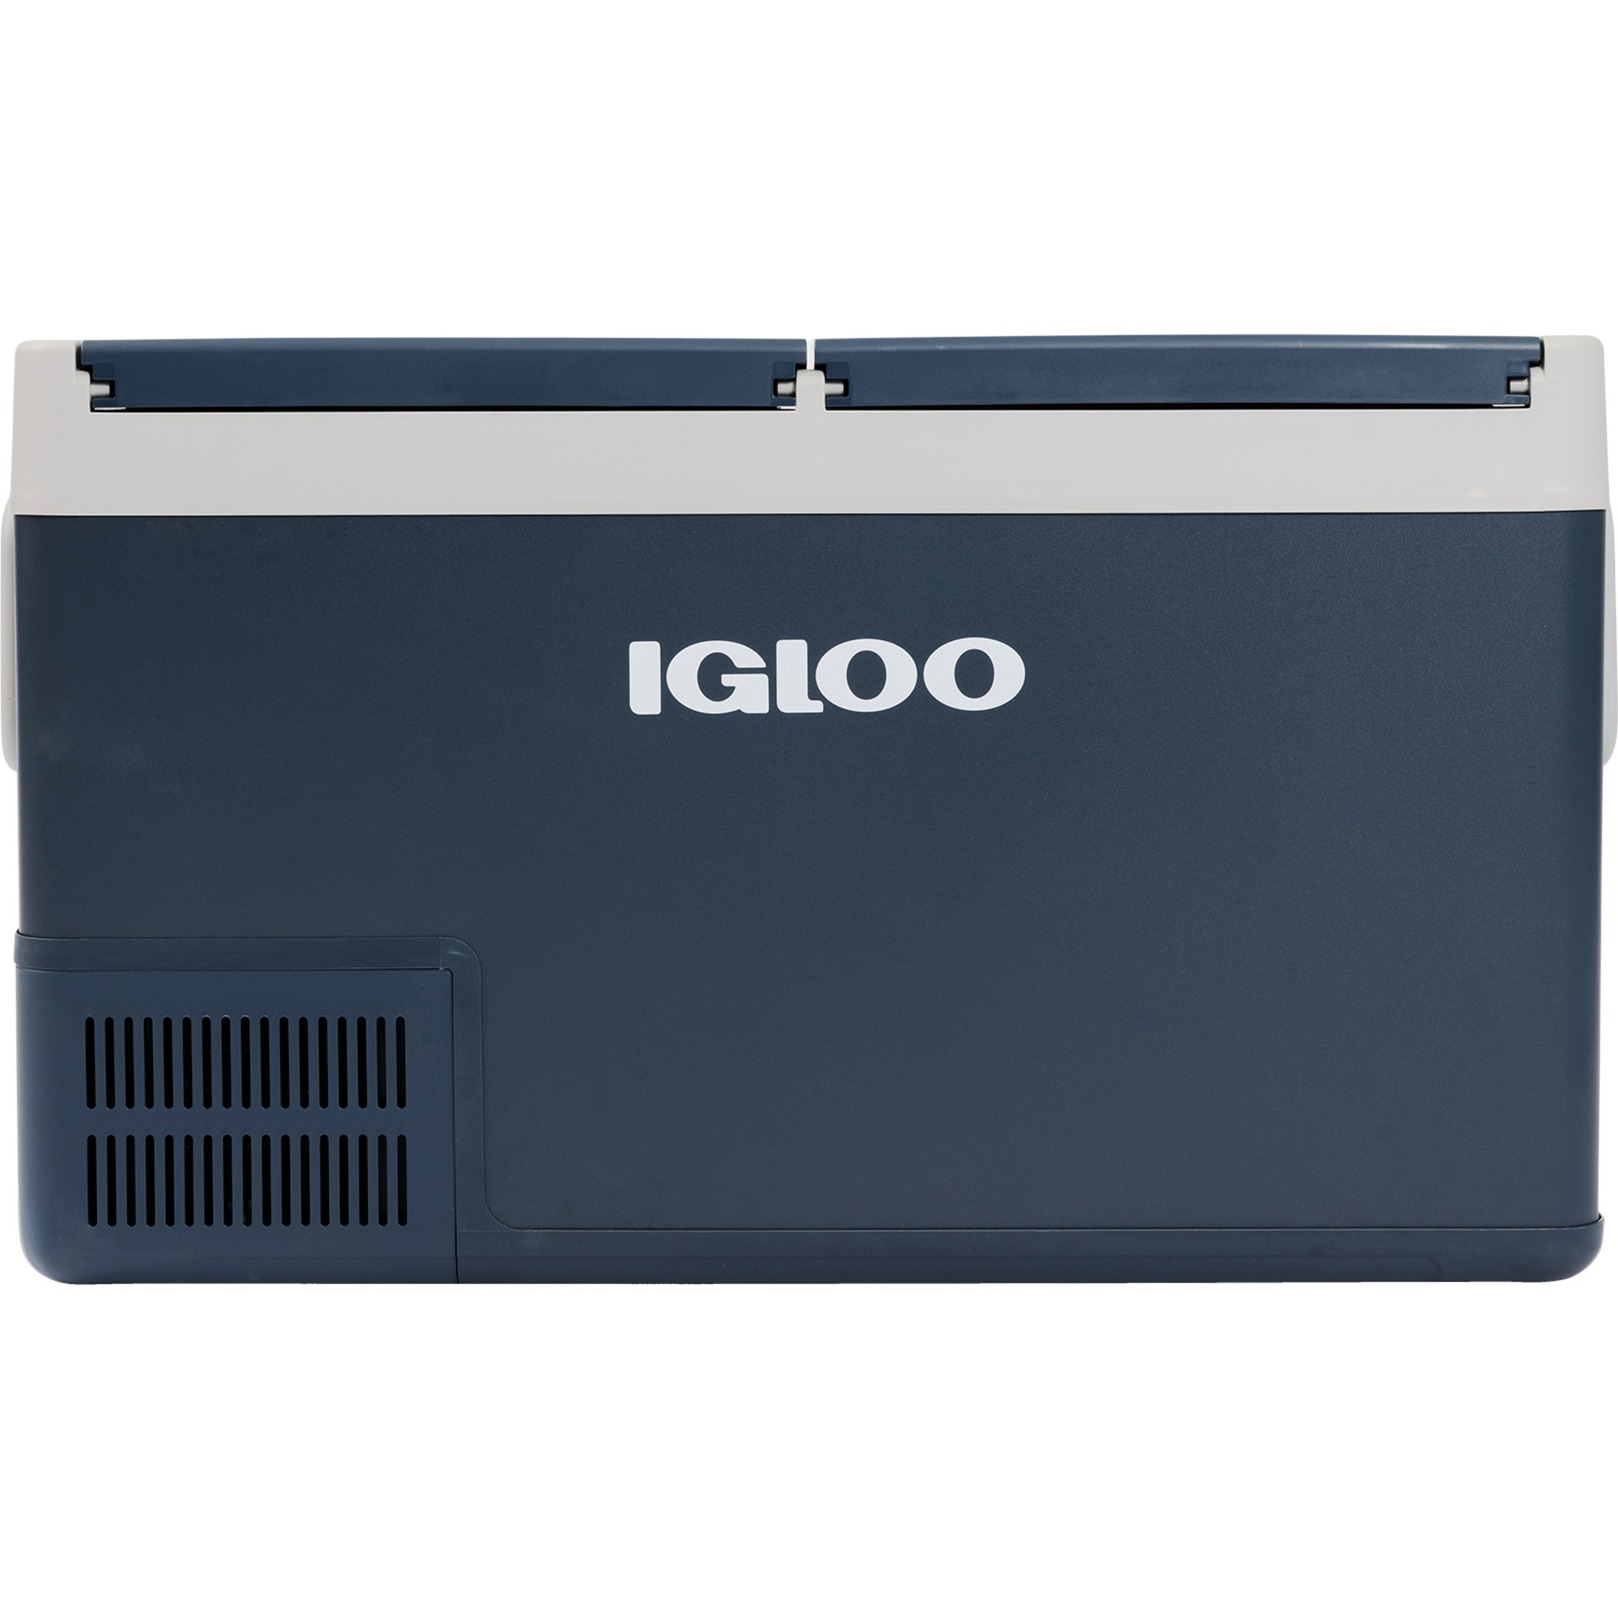 Igloo Icf80dz Ac/dc Raffreddatore Compressore Versione Eu (9620012766)